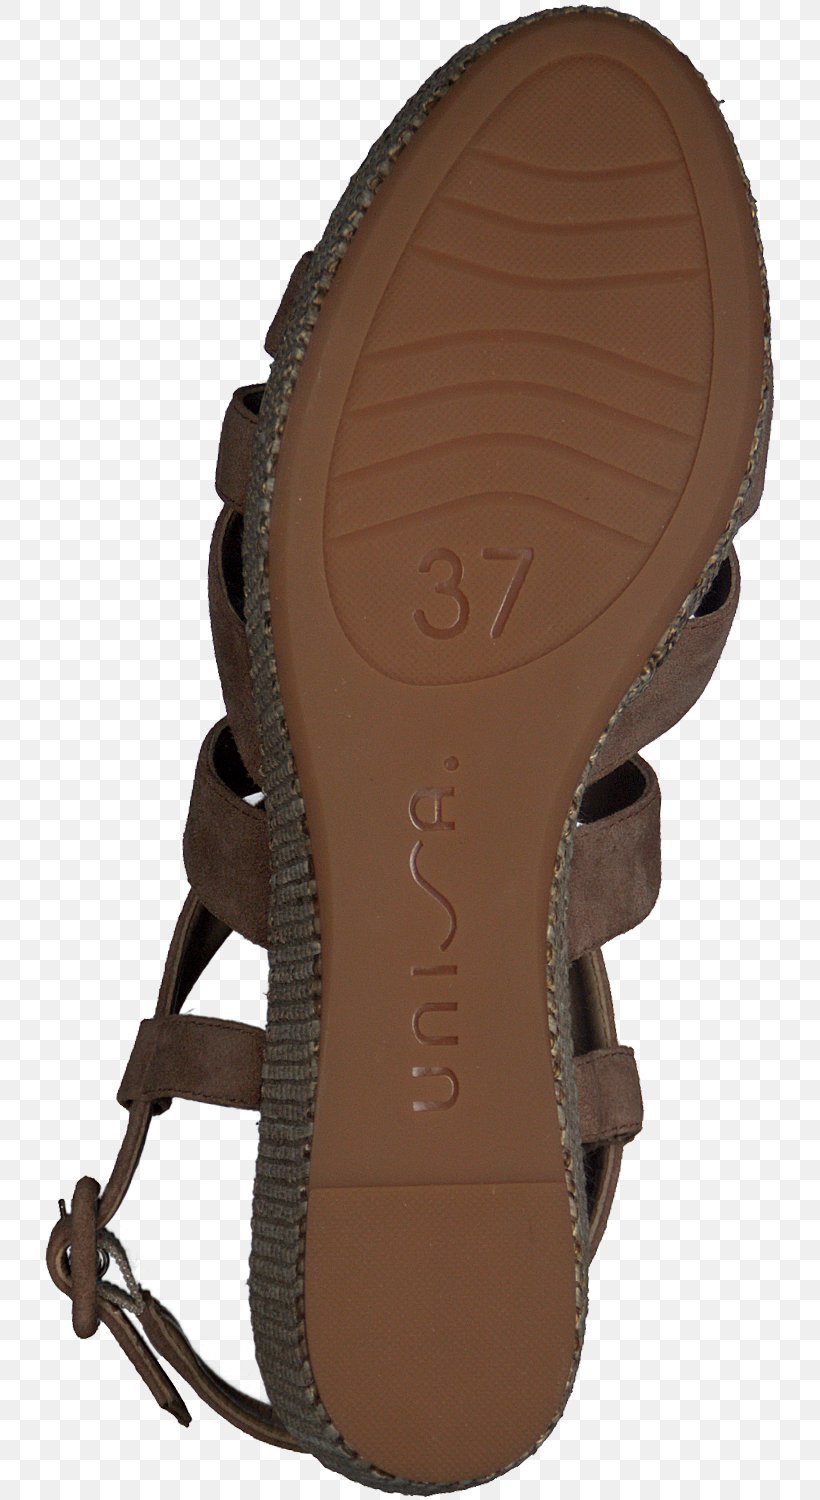 Sandal Shoe Wedge Black Walking, PNG, 744x1500px, Sandal, Black, Brown, Footwear, Industrial Design Download Free